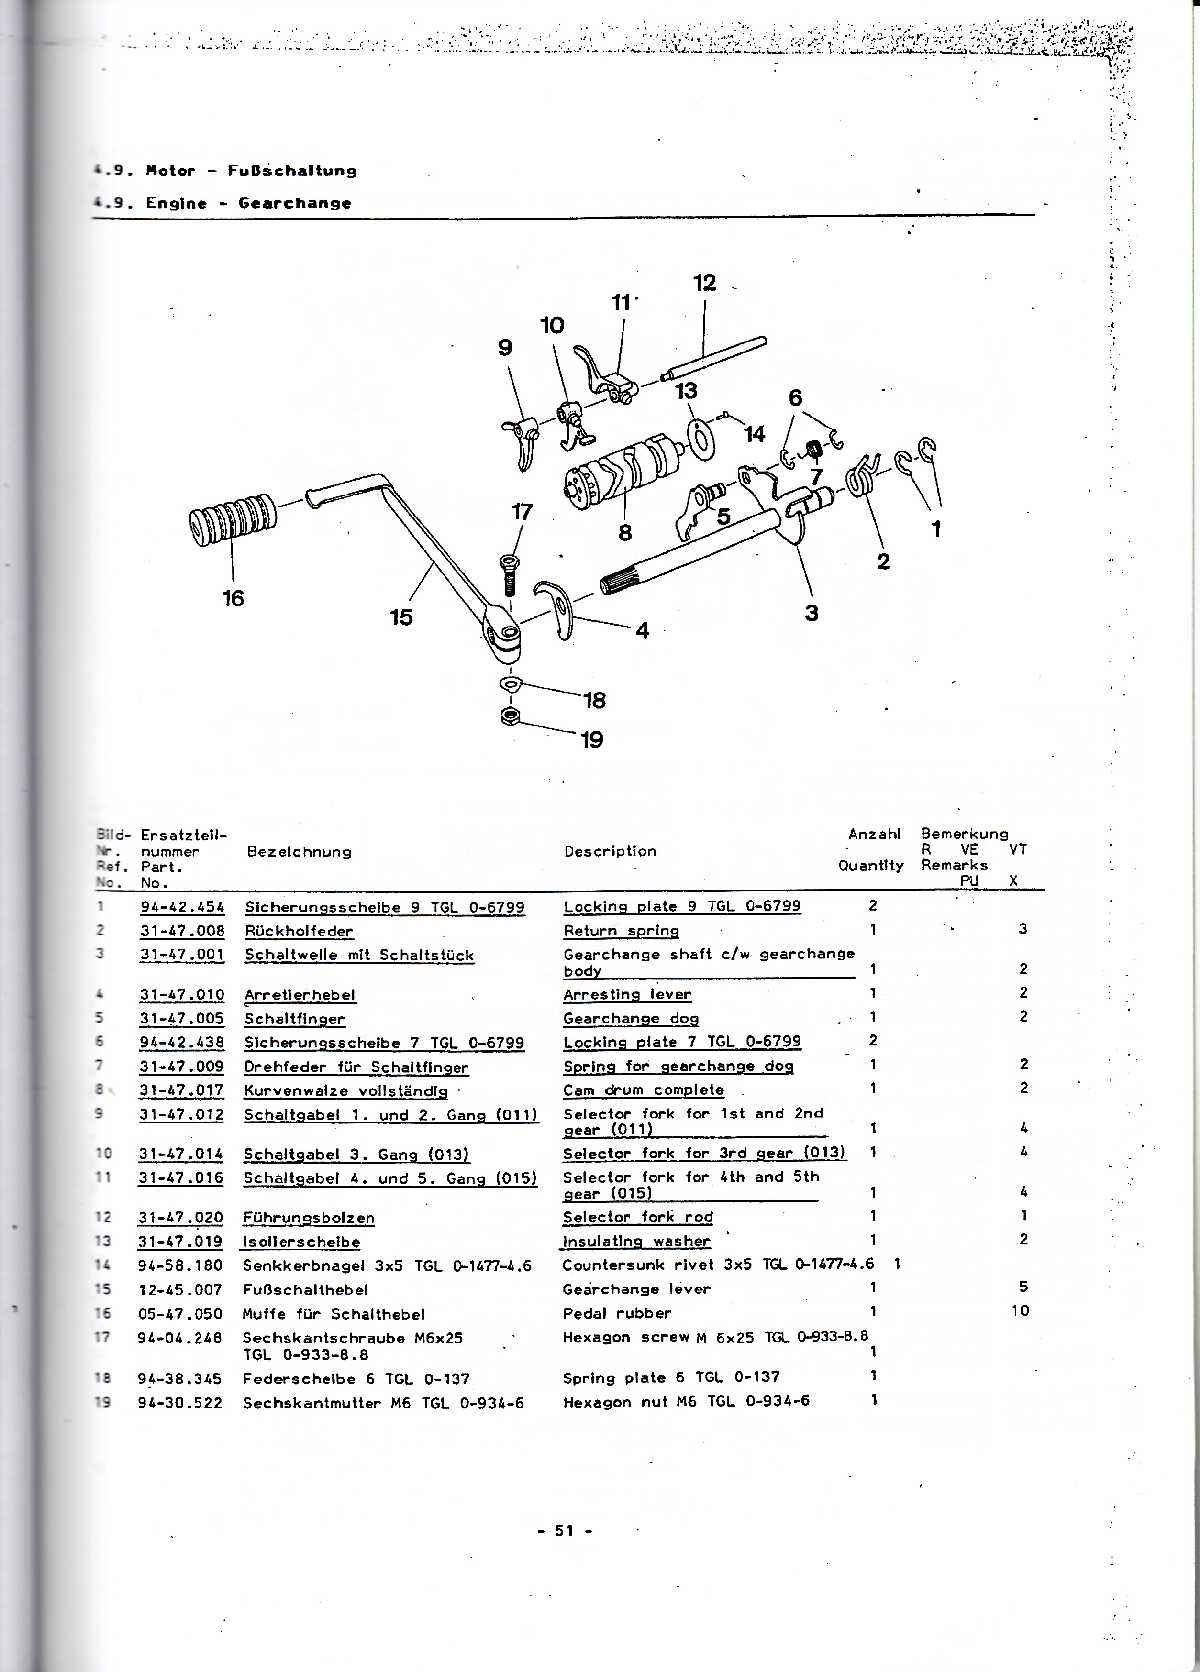 Katalog MZ 150 ETZ, MZ 125 ETZ - 4.9. Engine - Gearchange